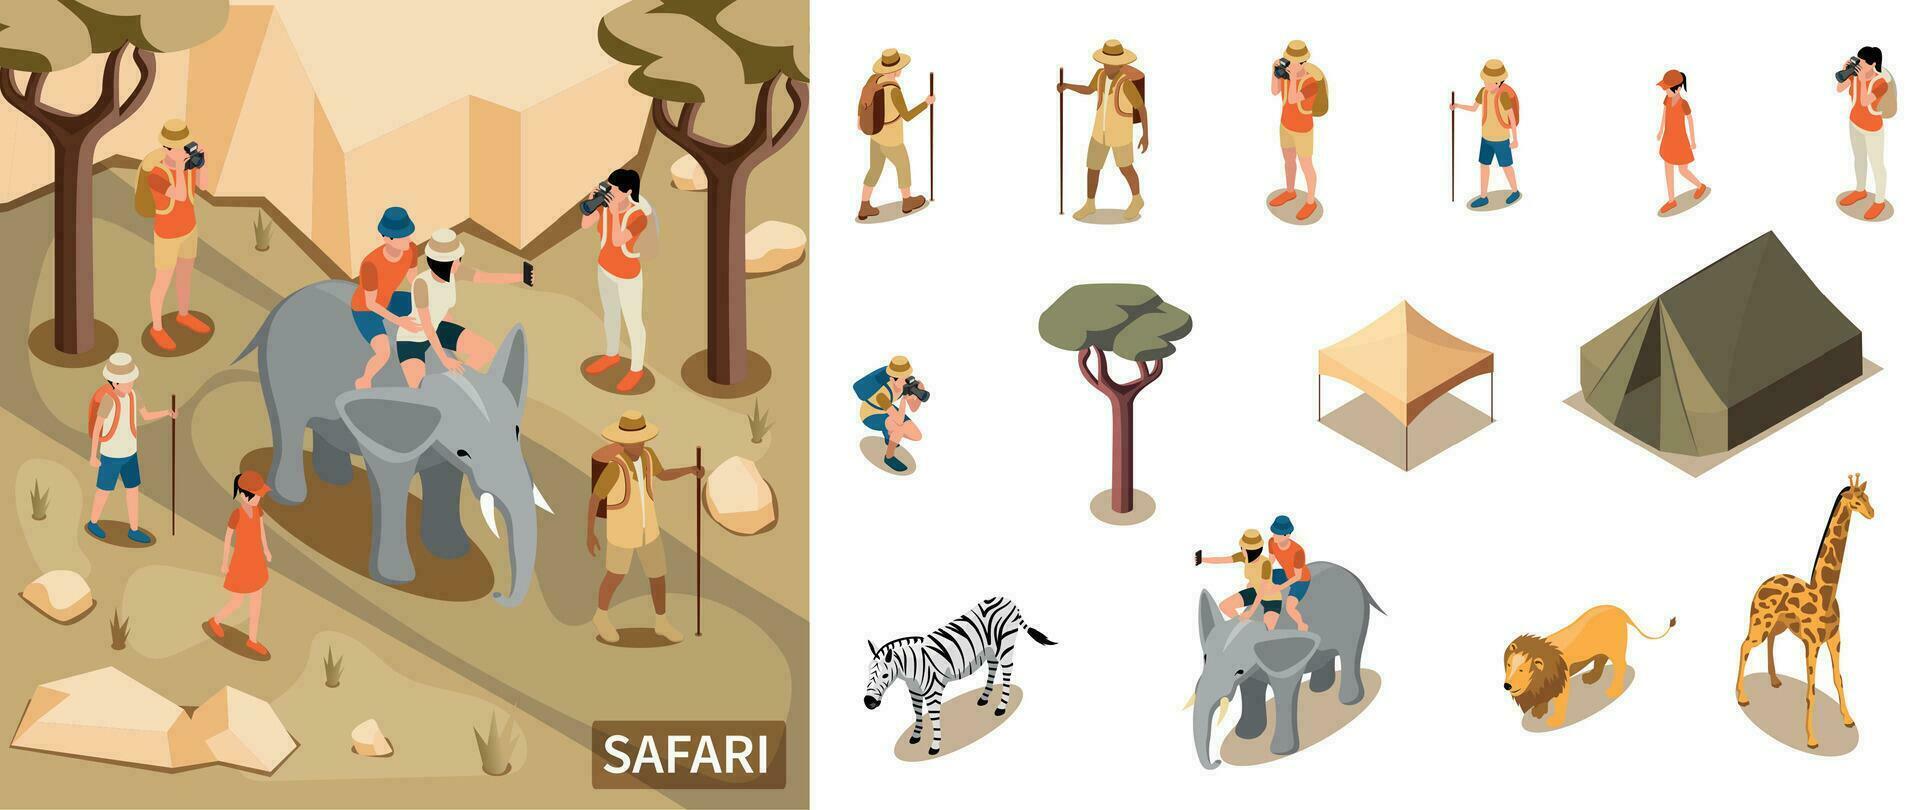 Safari Tourist Composition vector